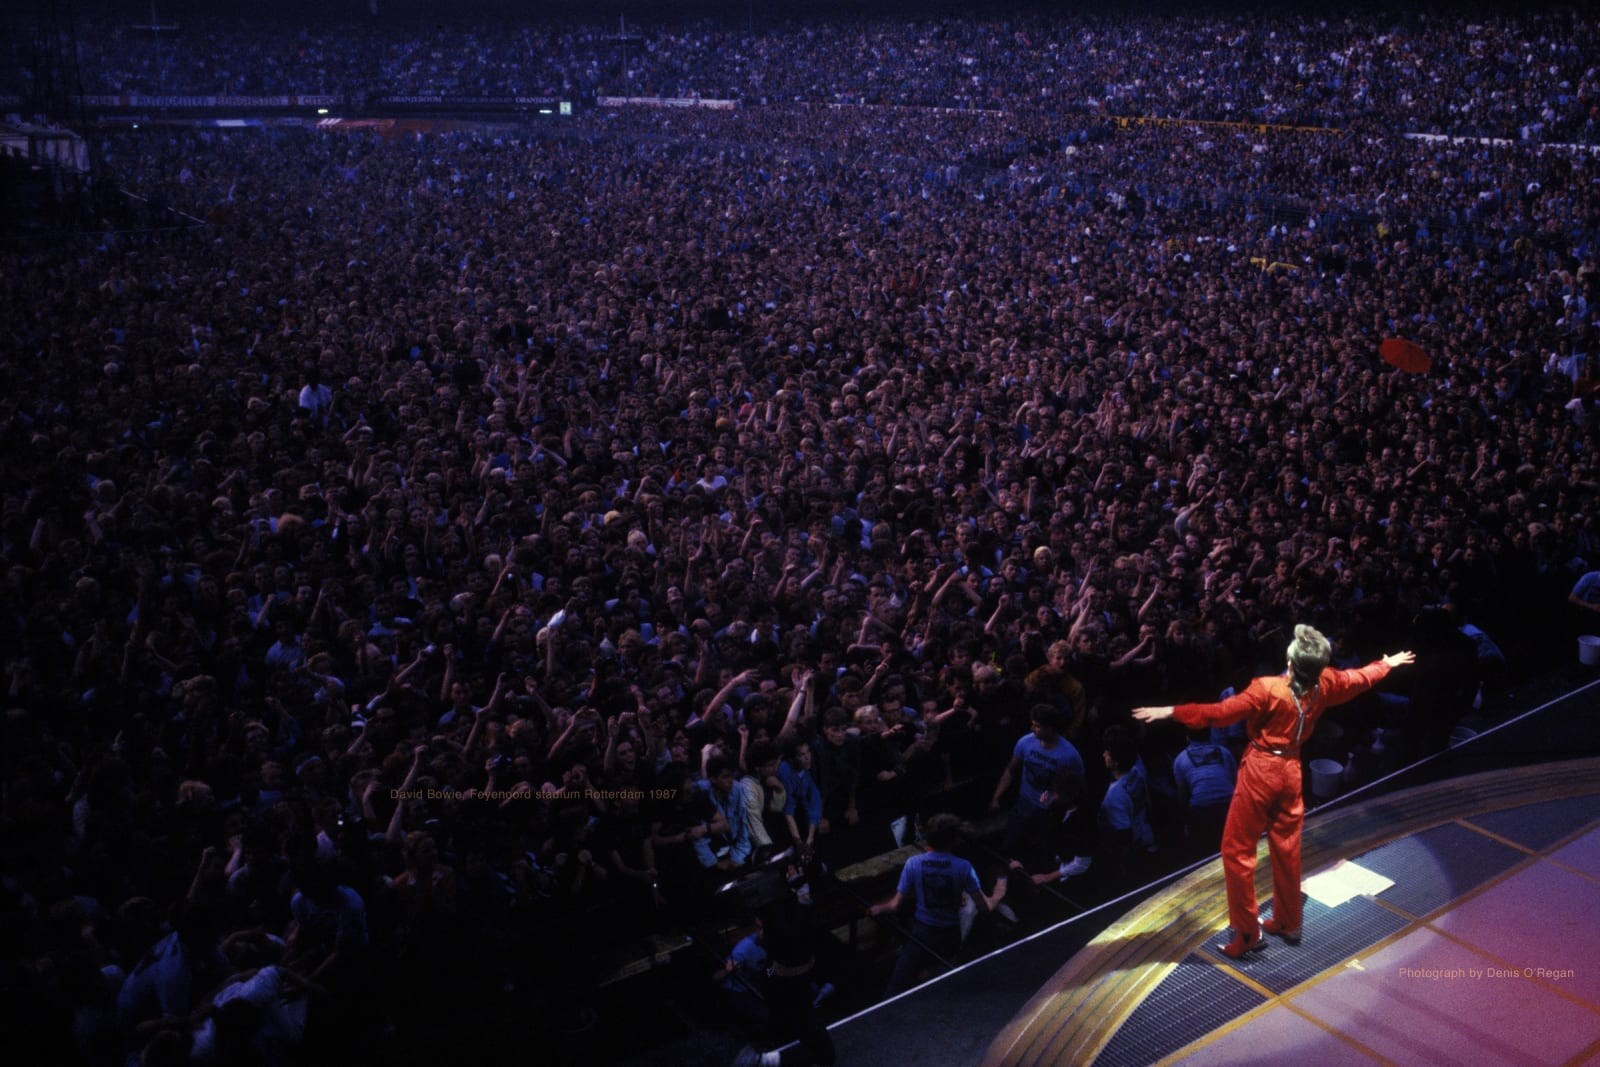 Дэвид Боуи на премьере своего тура в 1987 году на стадионе в Роттердаме (Нидерланды). Фотограф Дэнис О'Риган